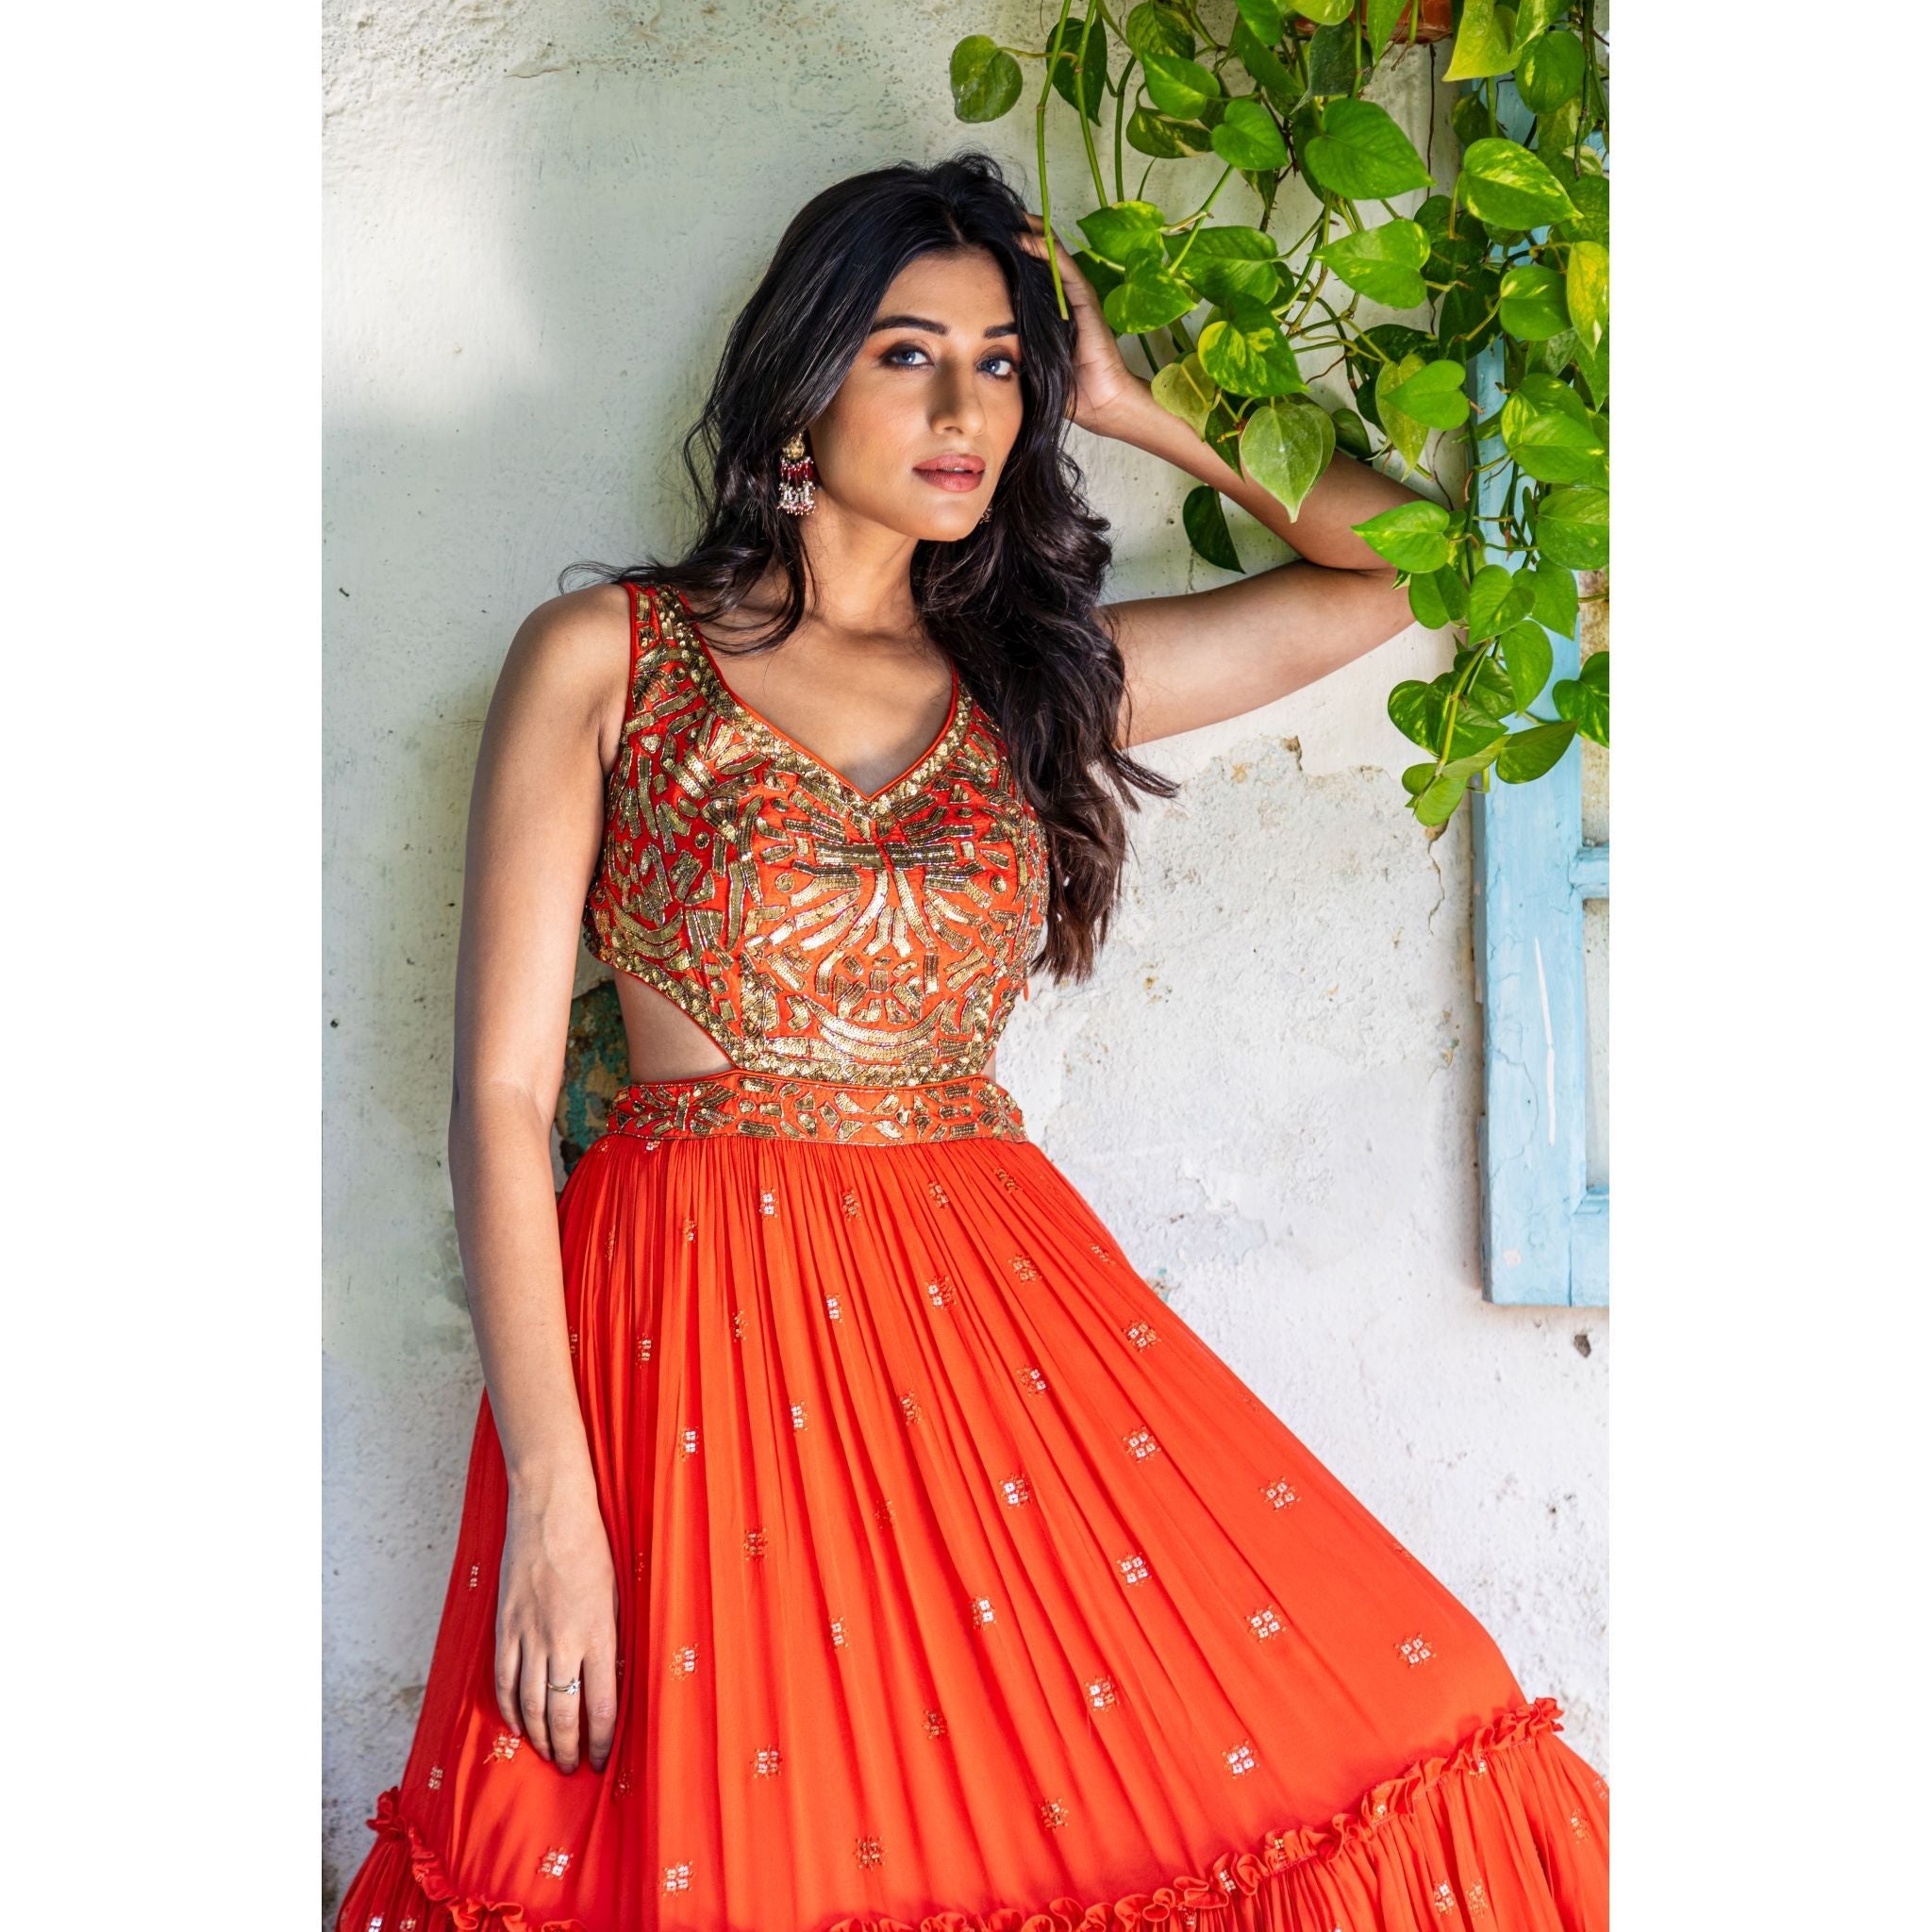 Vermillion Orange Tiered Gown - Indian Designer Bridal Wedding Outfit